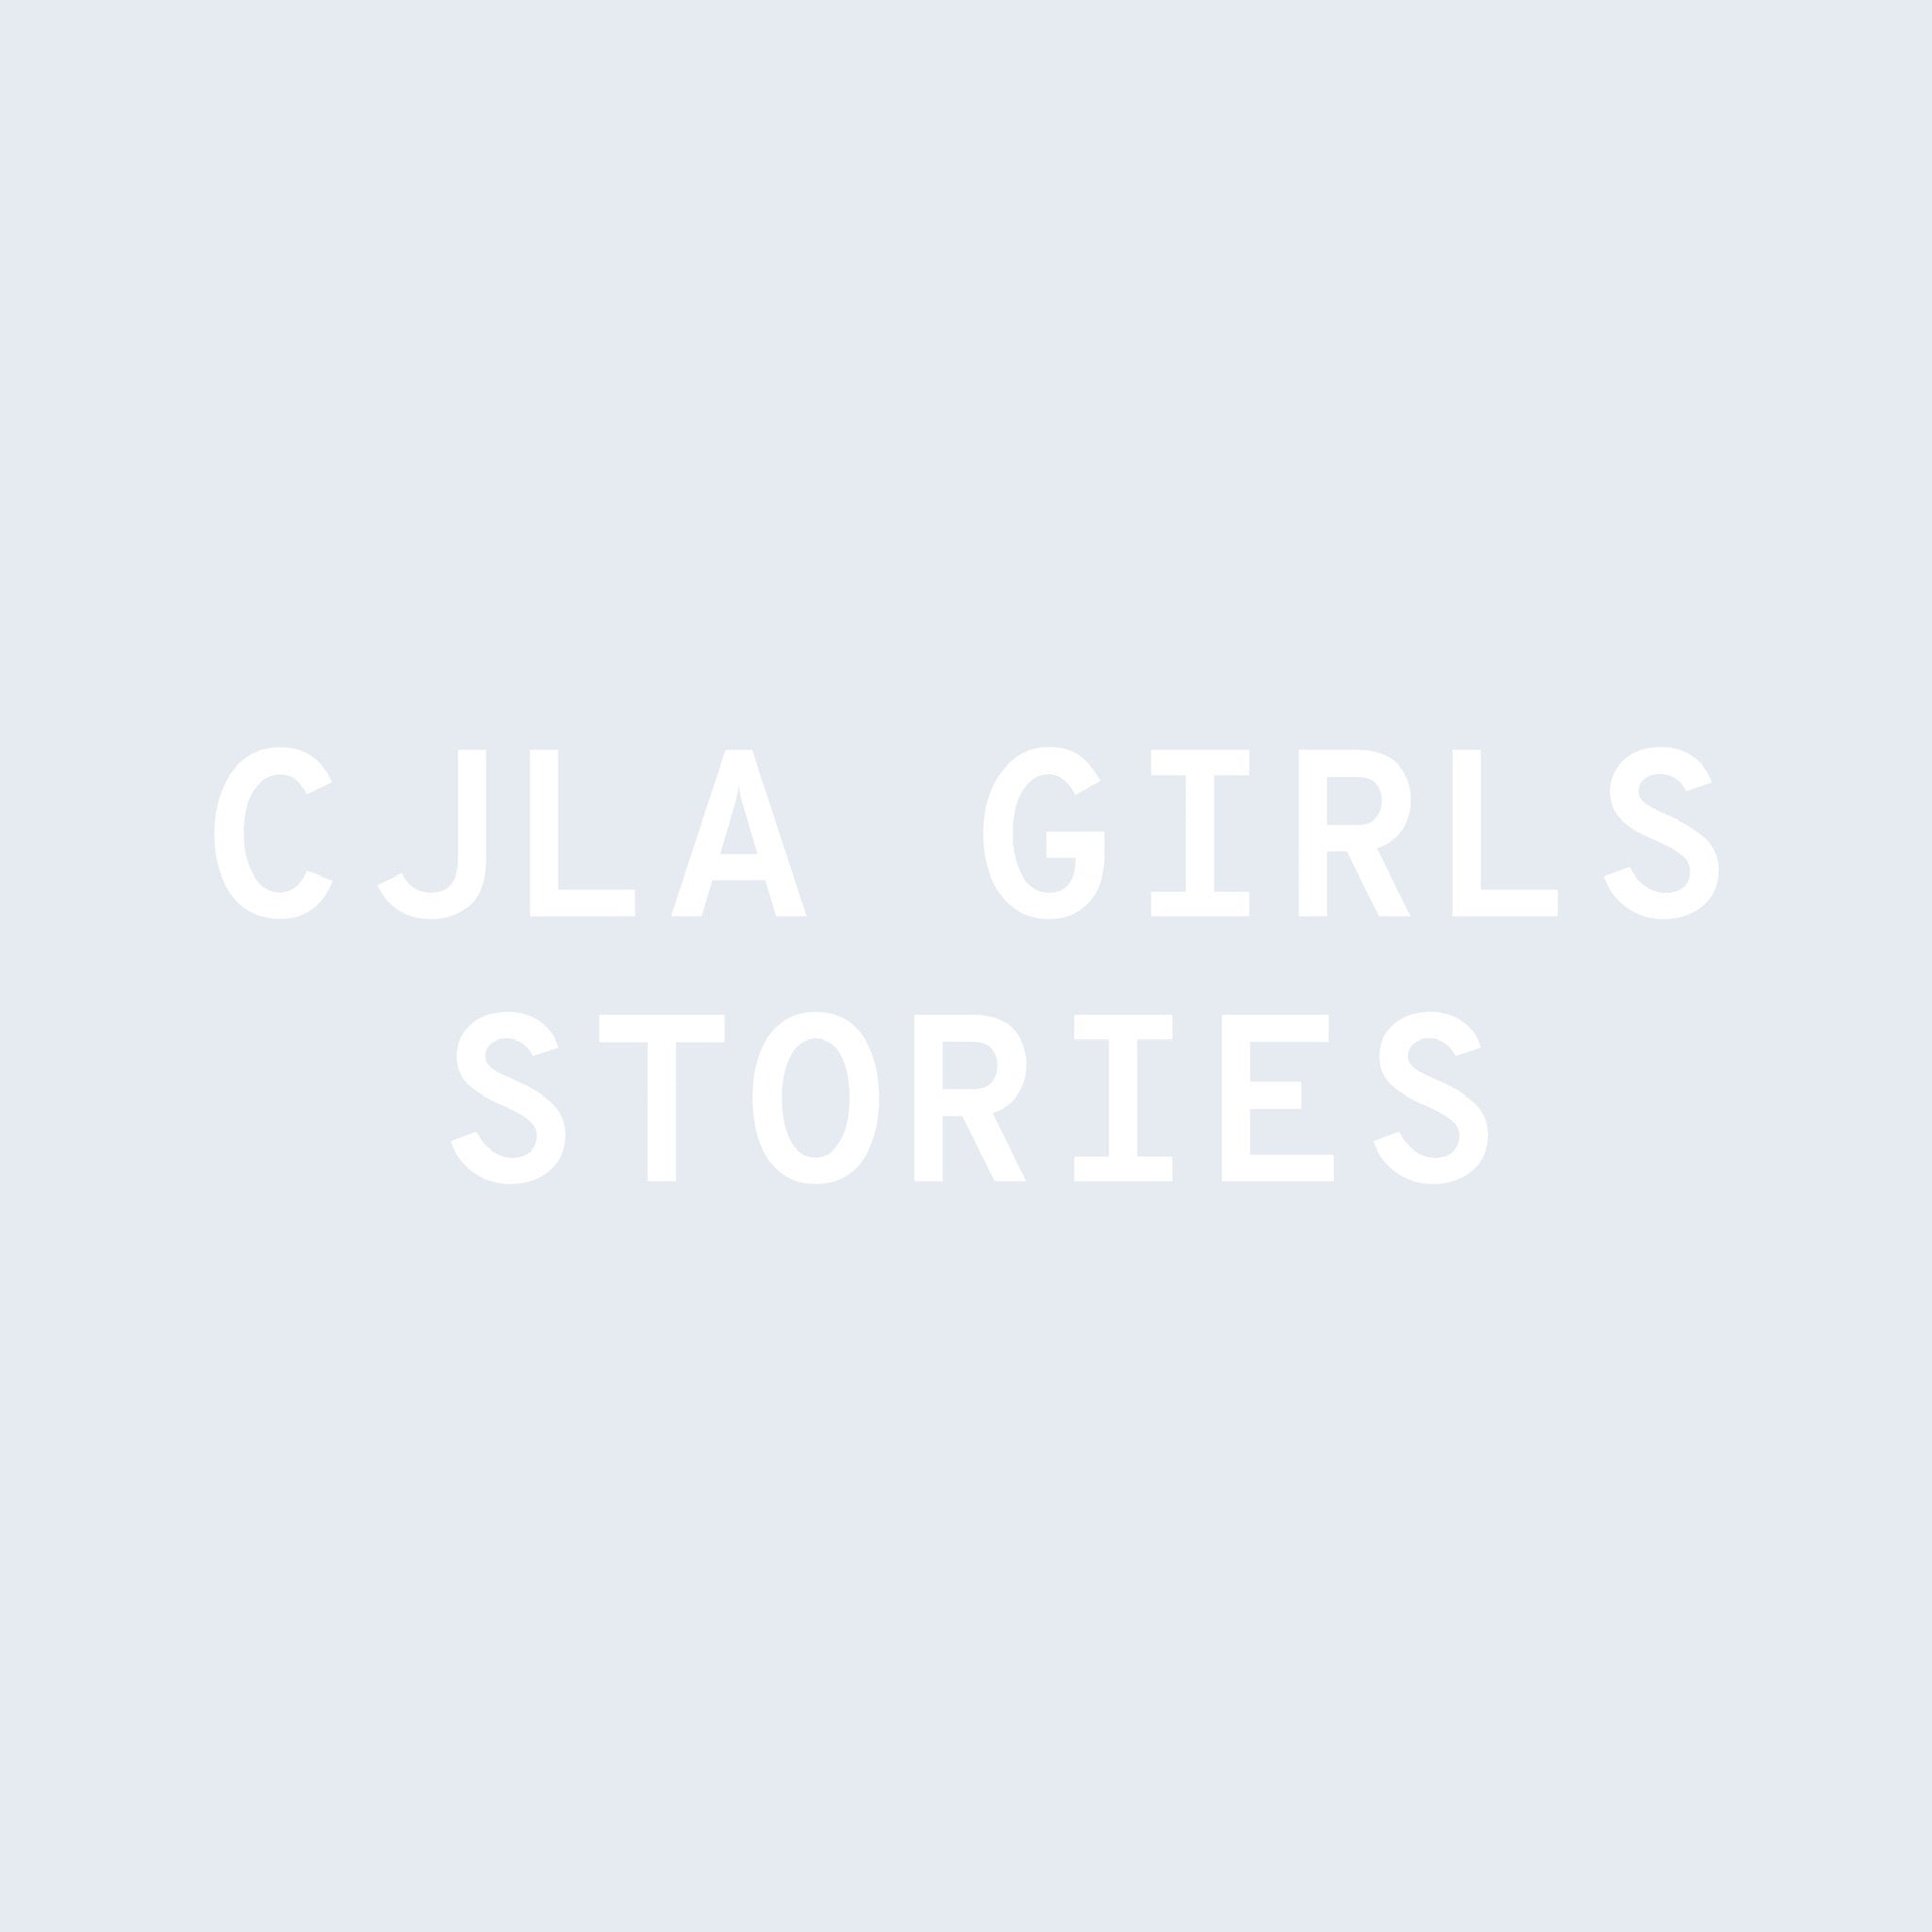 CJLA Girls Story: Summer Sieller